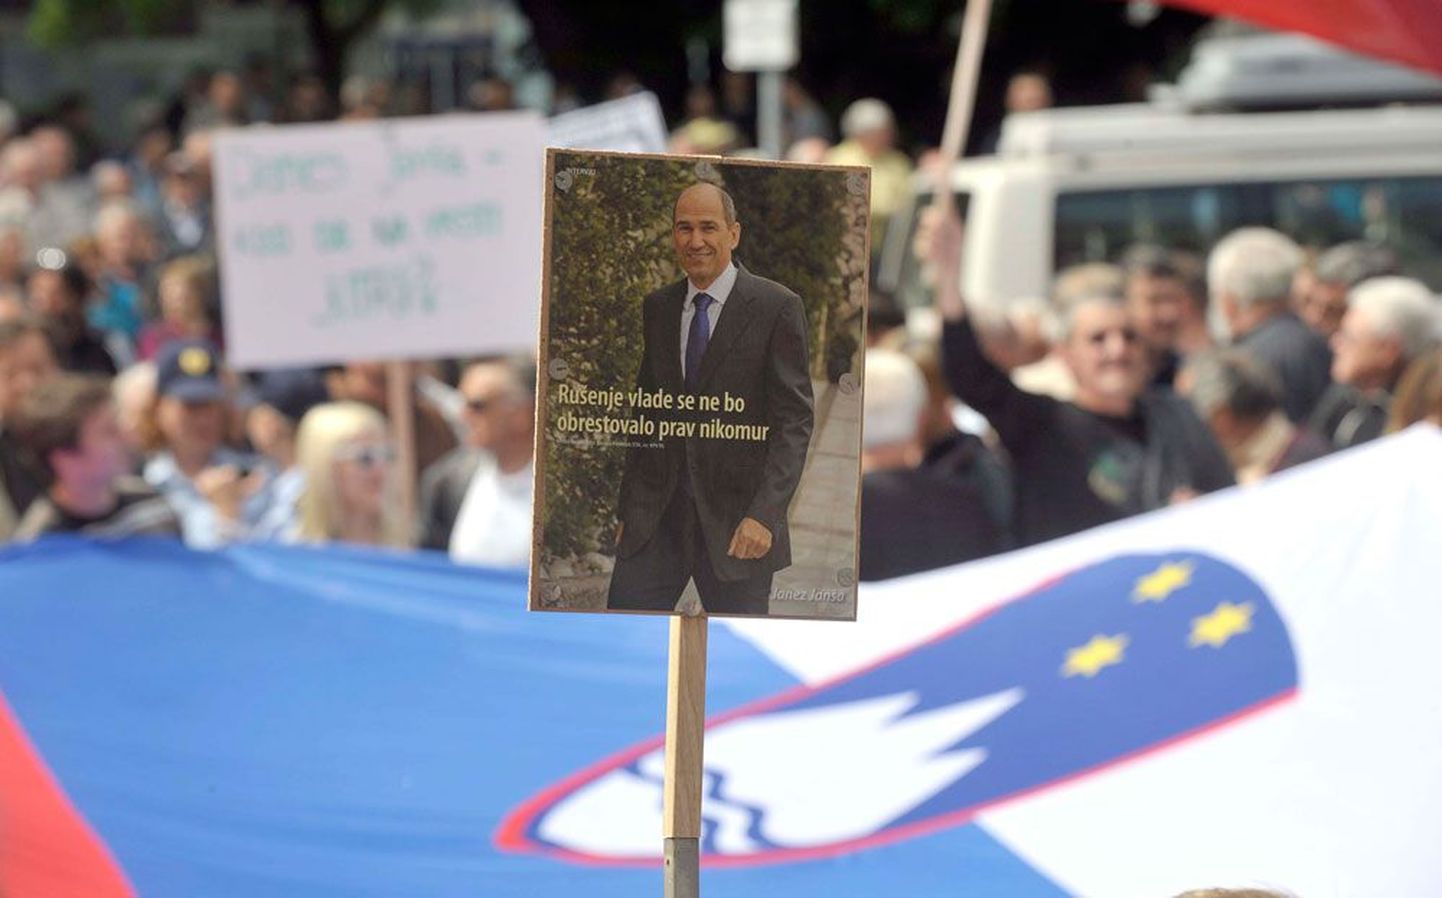 «Valitsuse purustamine pole kellegi huvides,» deklareeris plakat pärast Janez Janša süüdimõistmist üleeile Ljubljanas tänavale tulnud endise peaministri poolehoidja käes.